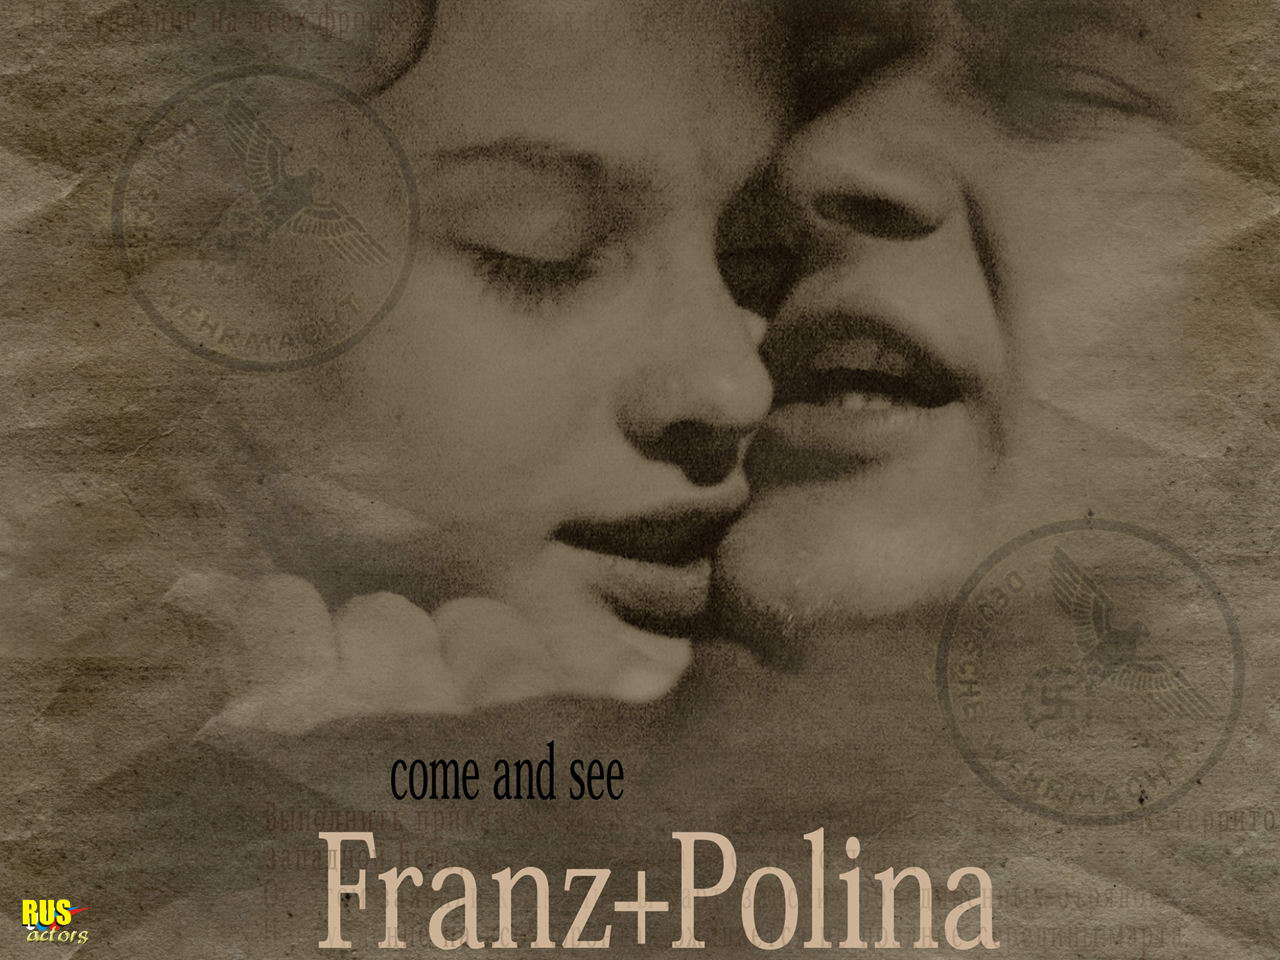    / Franz+Polina___     -       / Franz+Polina      